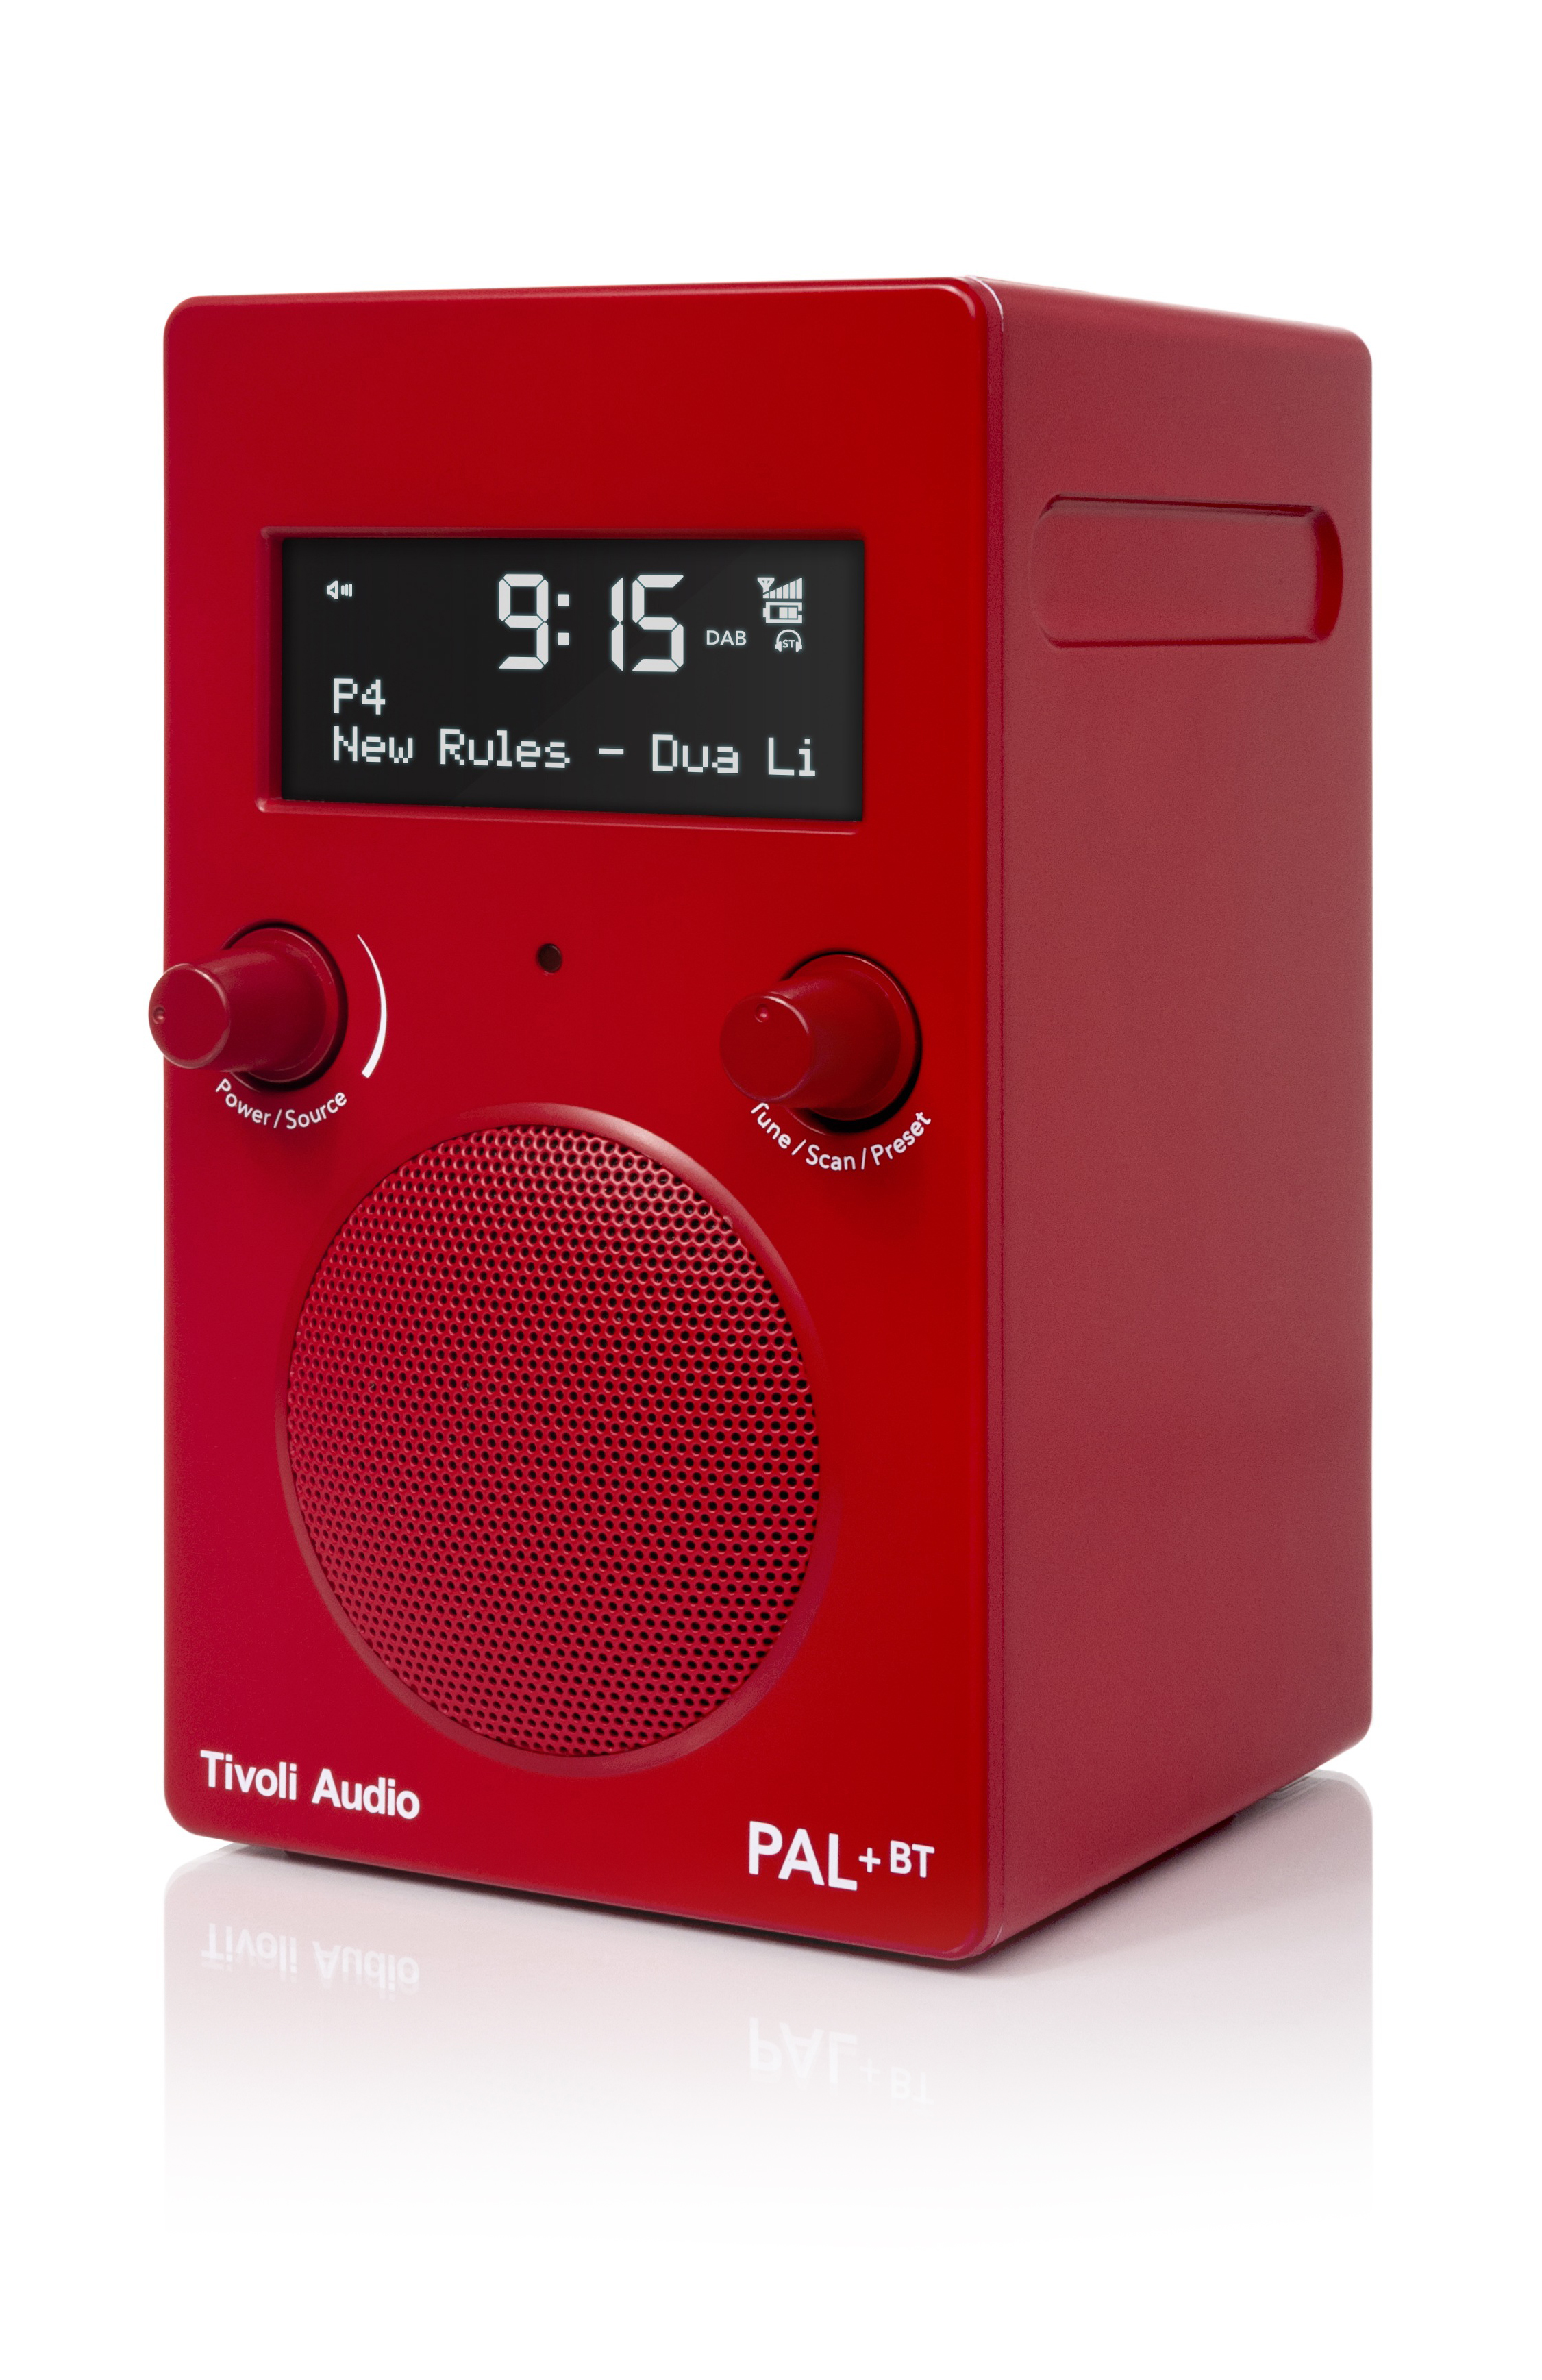 TIVOLI AUDIO BT DAB+, PAL+ FM, DAB+ Radio, Bluetooth, DAB+, Rot